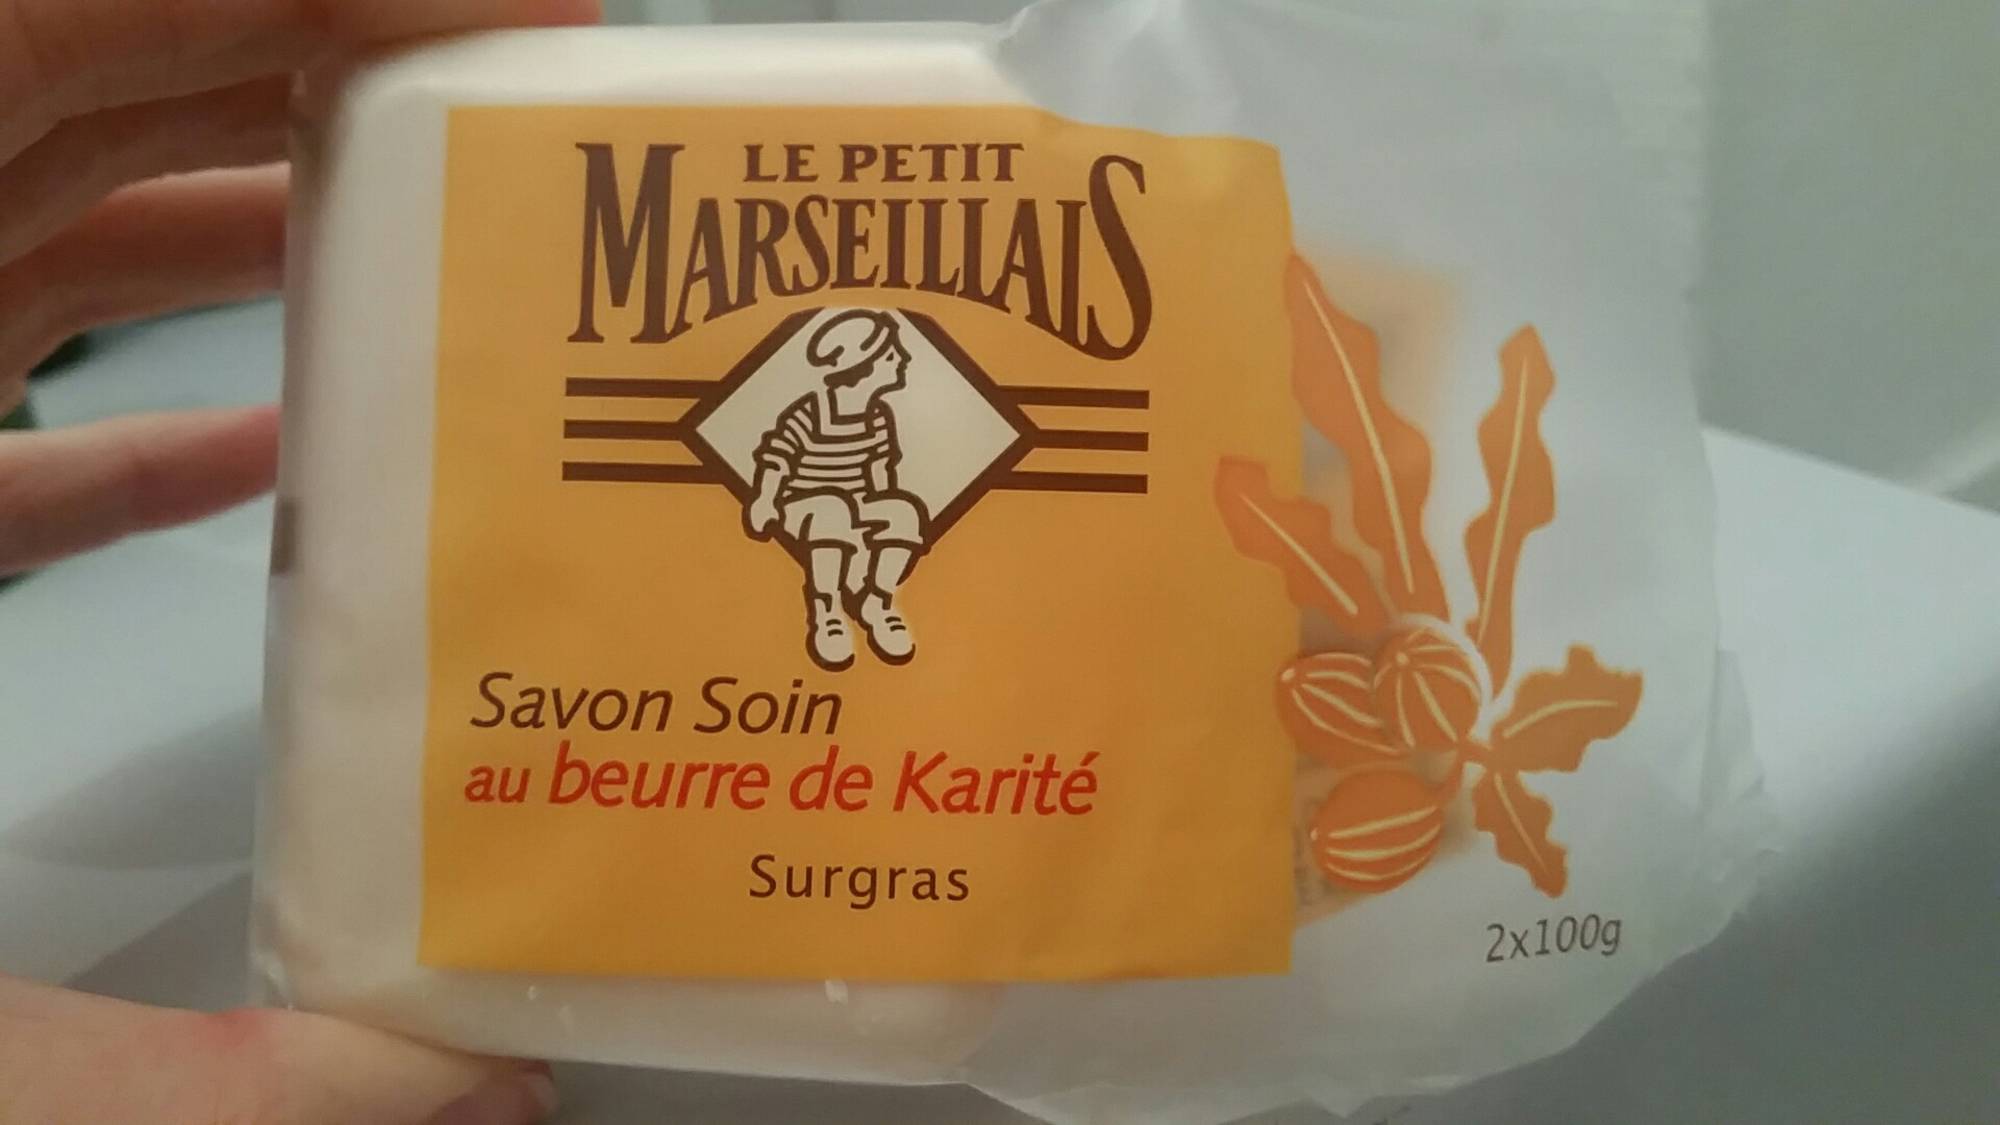 LE PETIT MARSEILLAIS - Savon soin au beurre de karité